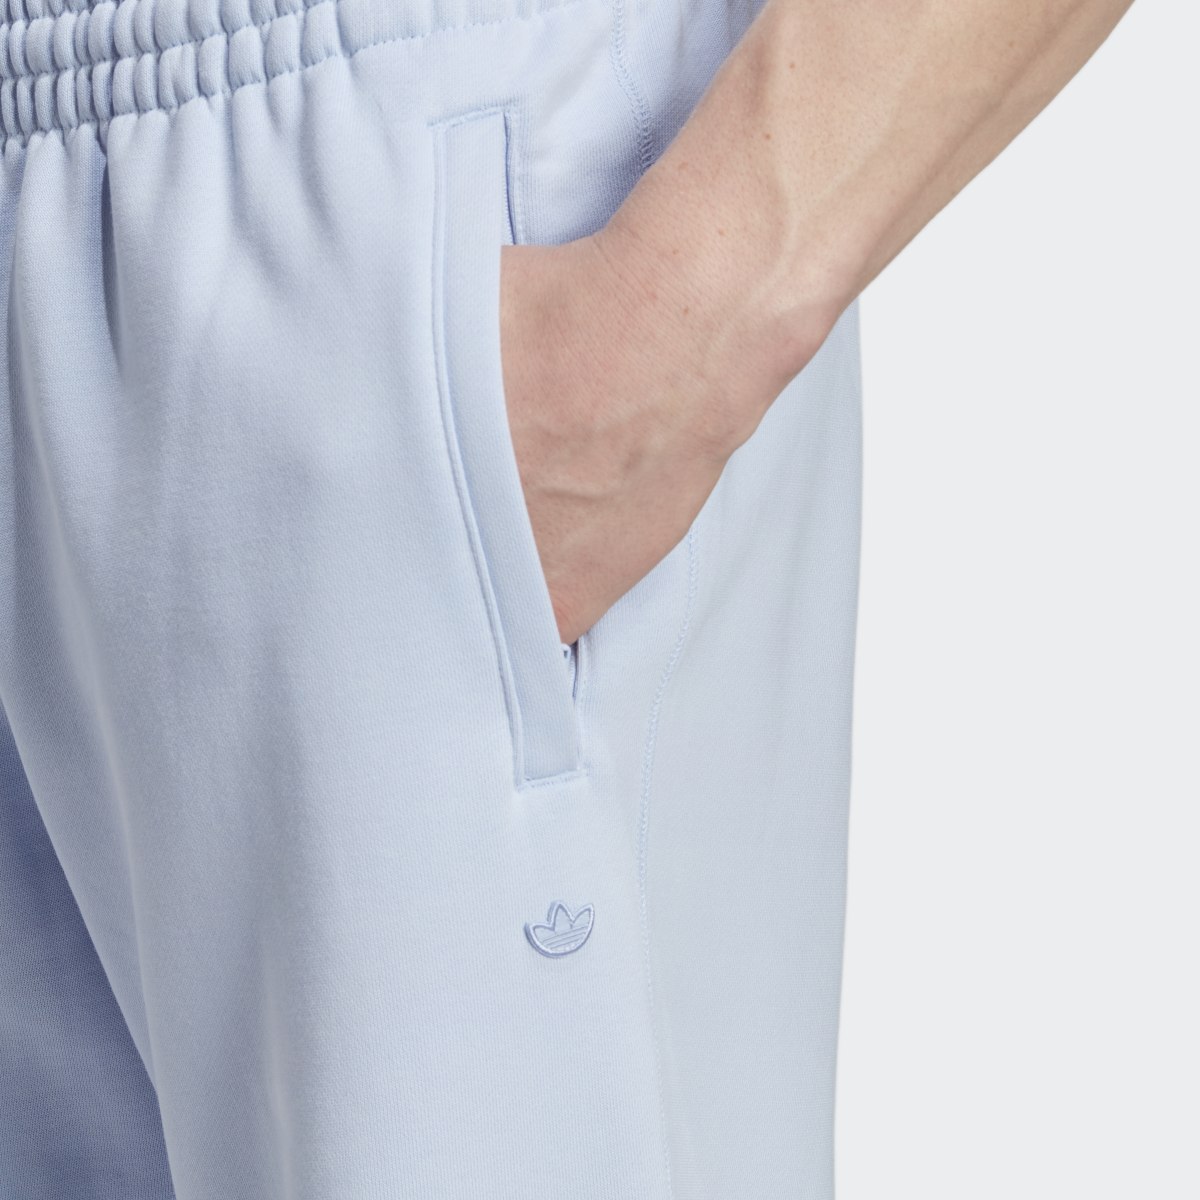 Adidas Premium Essentials Sweat Pants. 5